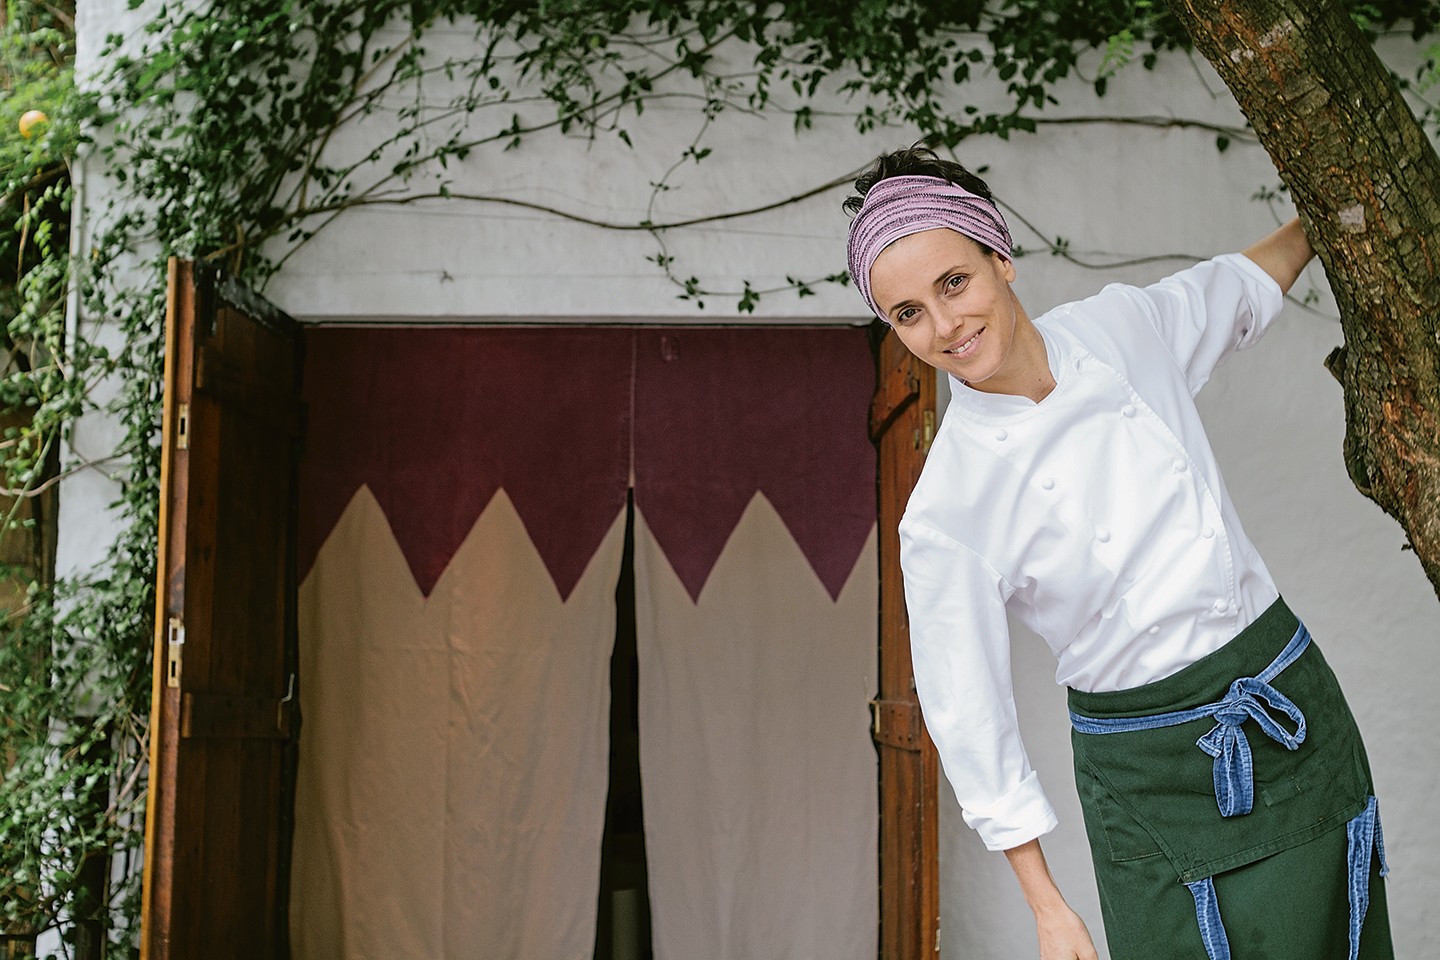 Conheça as 8 chefs mulheres que estão revolucionando a gastronomia mundial (Foto: Roberto Seba)